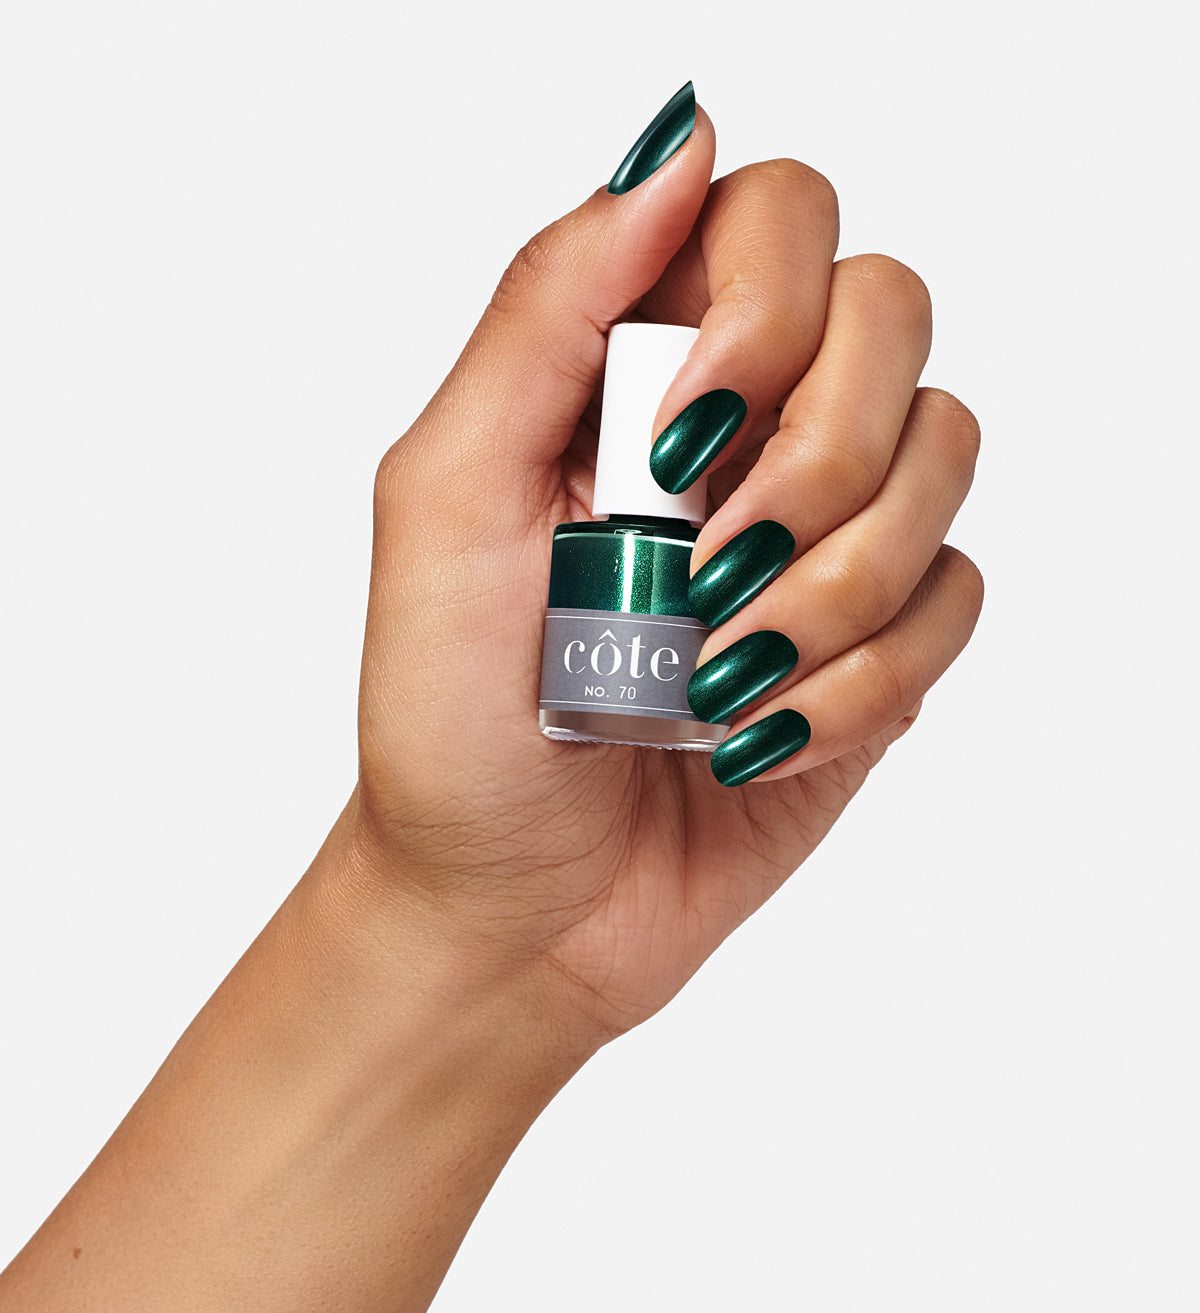 No. 70 Shimmery Ocean Green Nail Polish - Vegan Nail Polish - hand